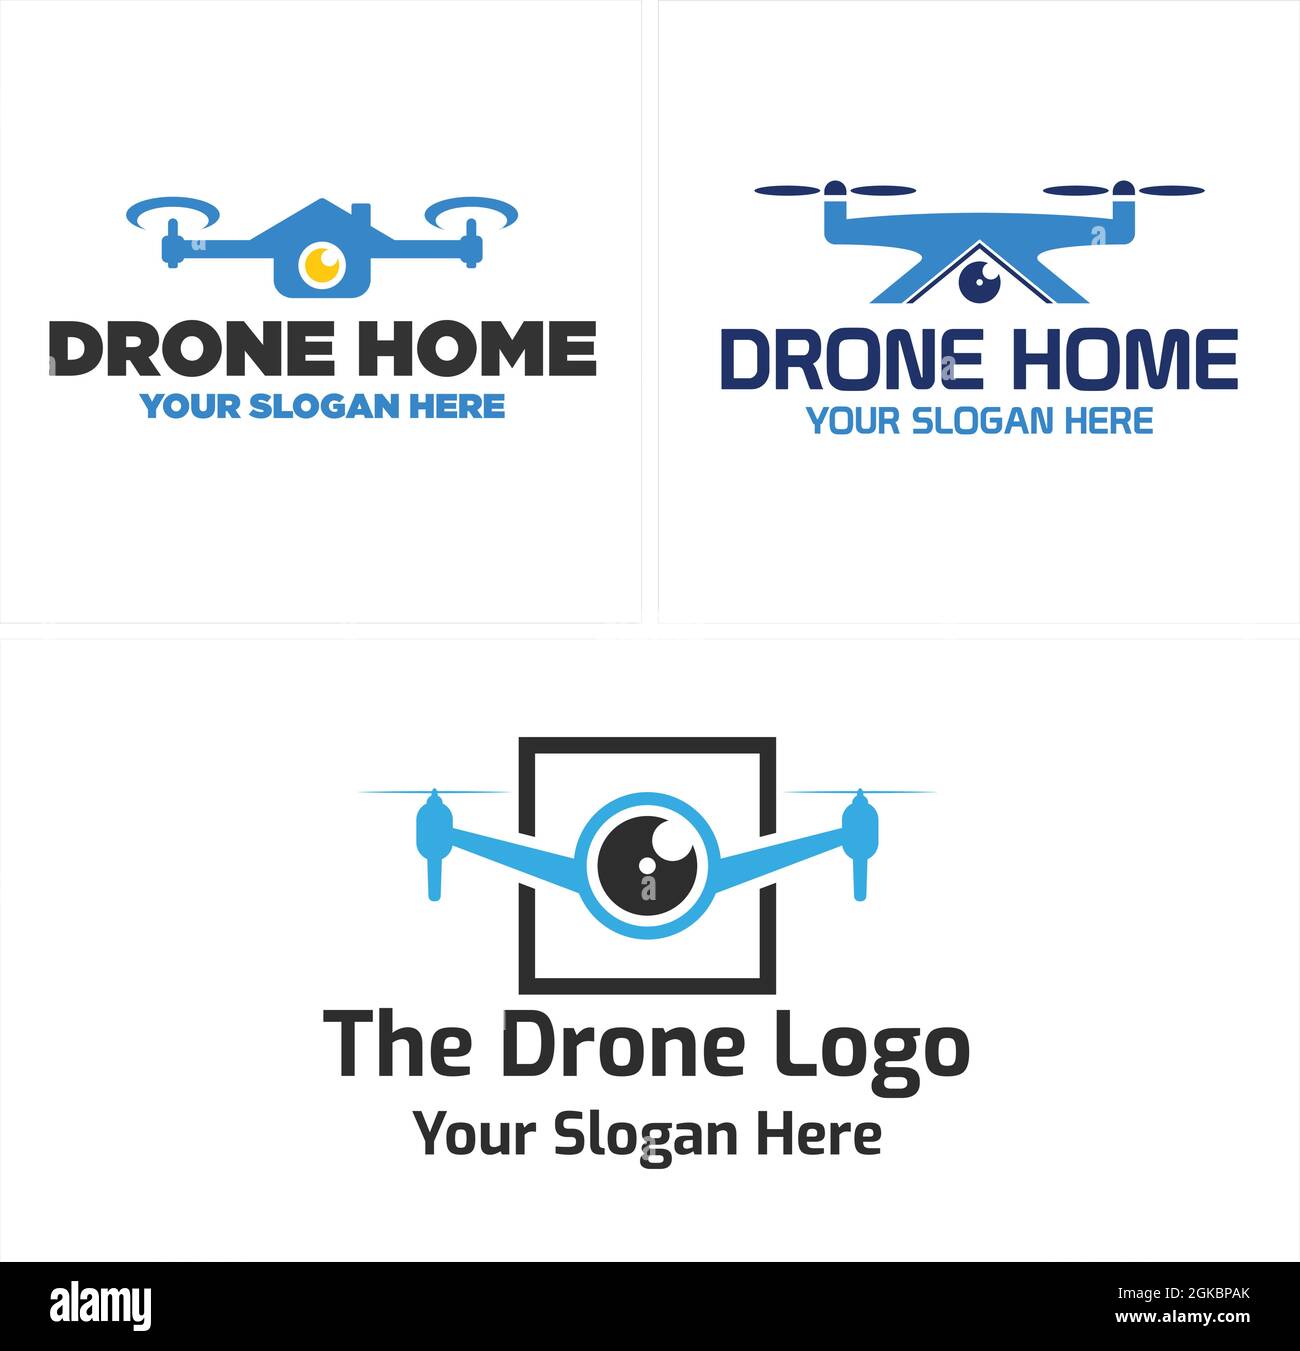 Photography drone home logo design Stock Vector